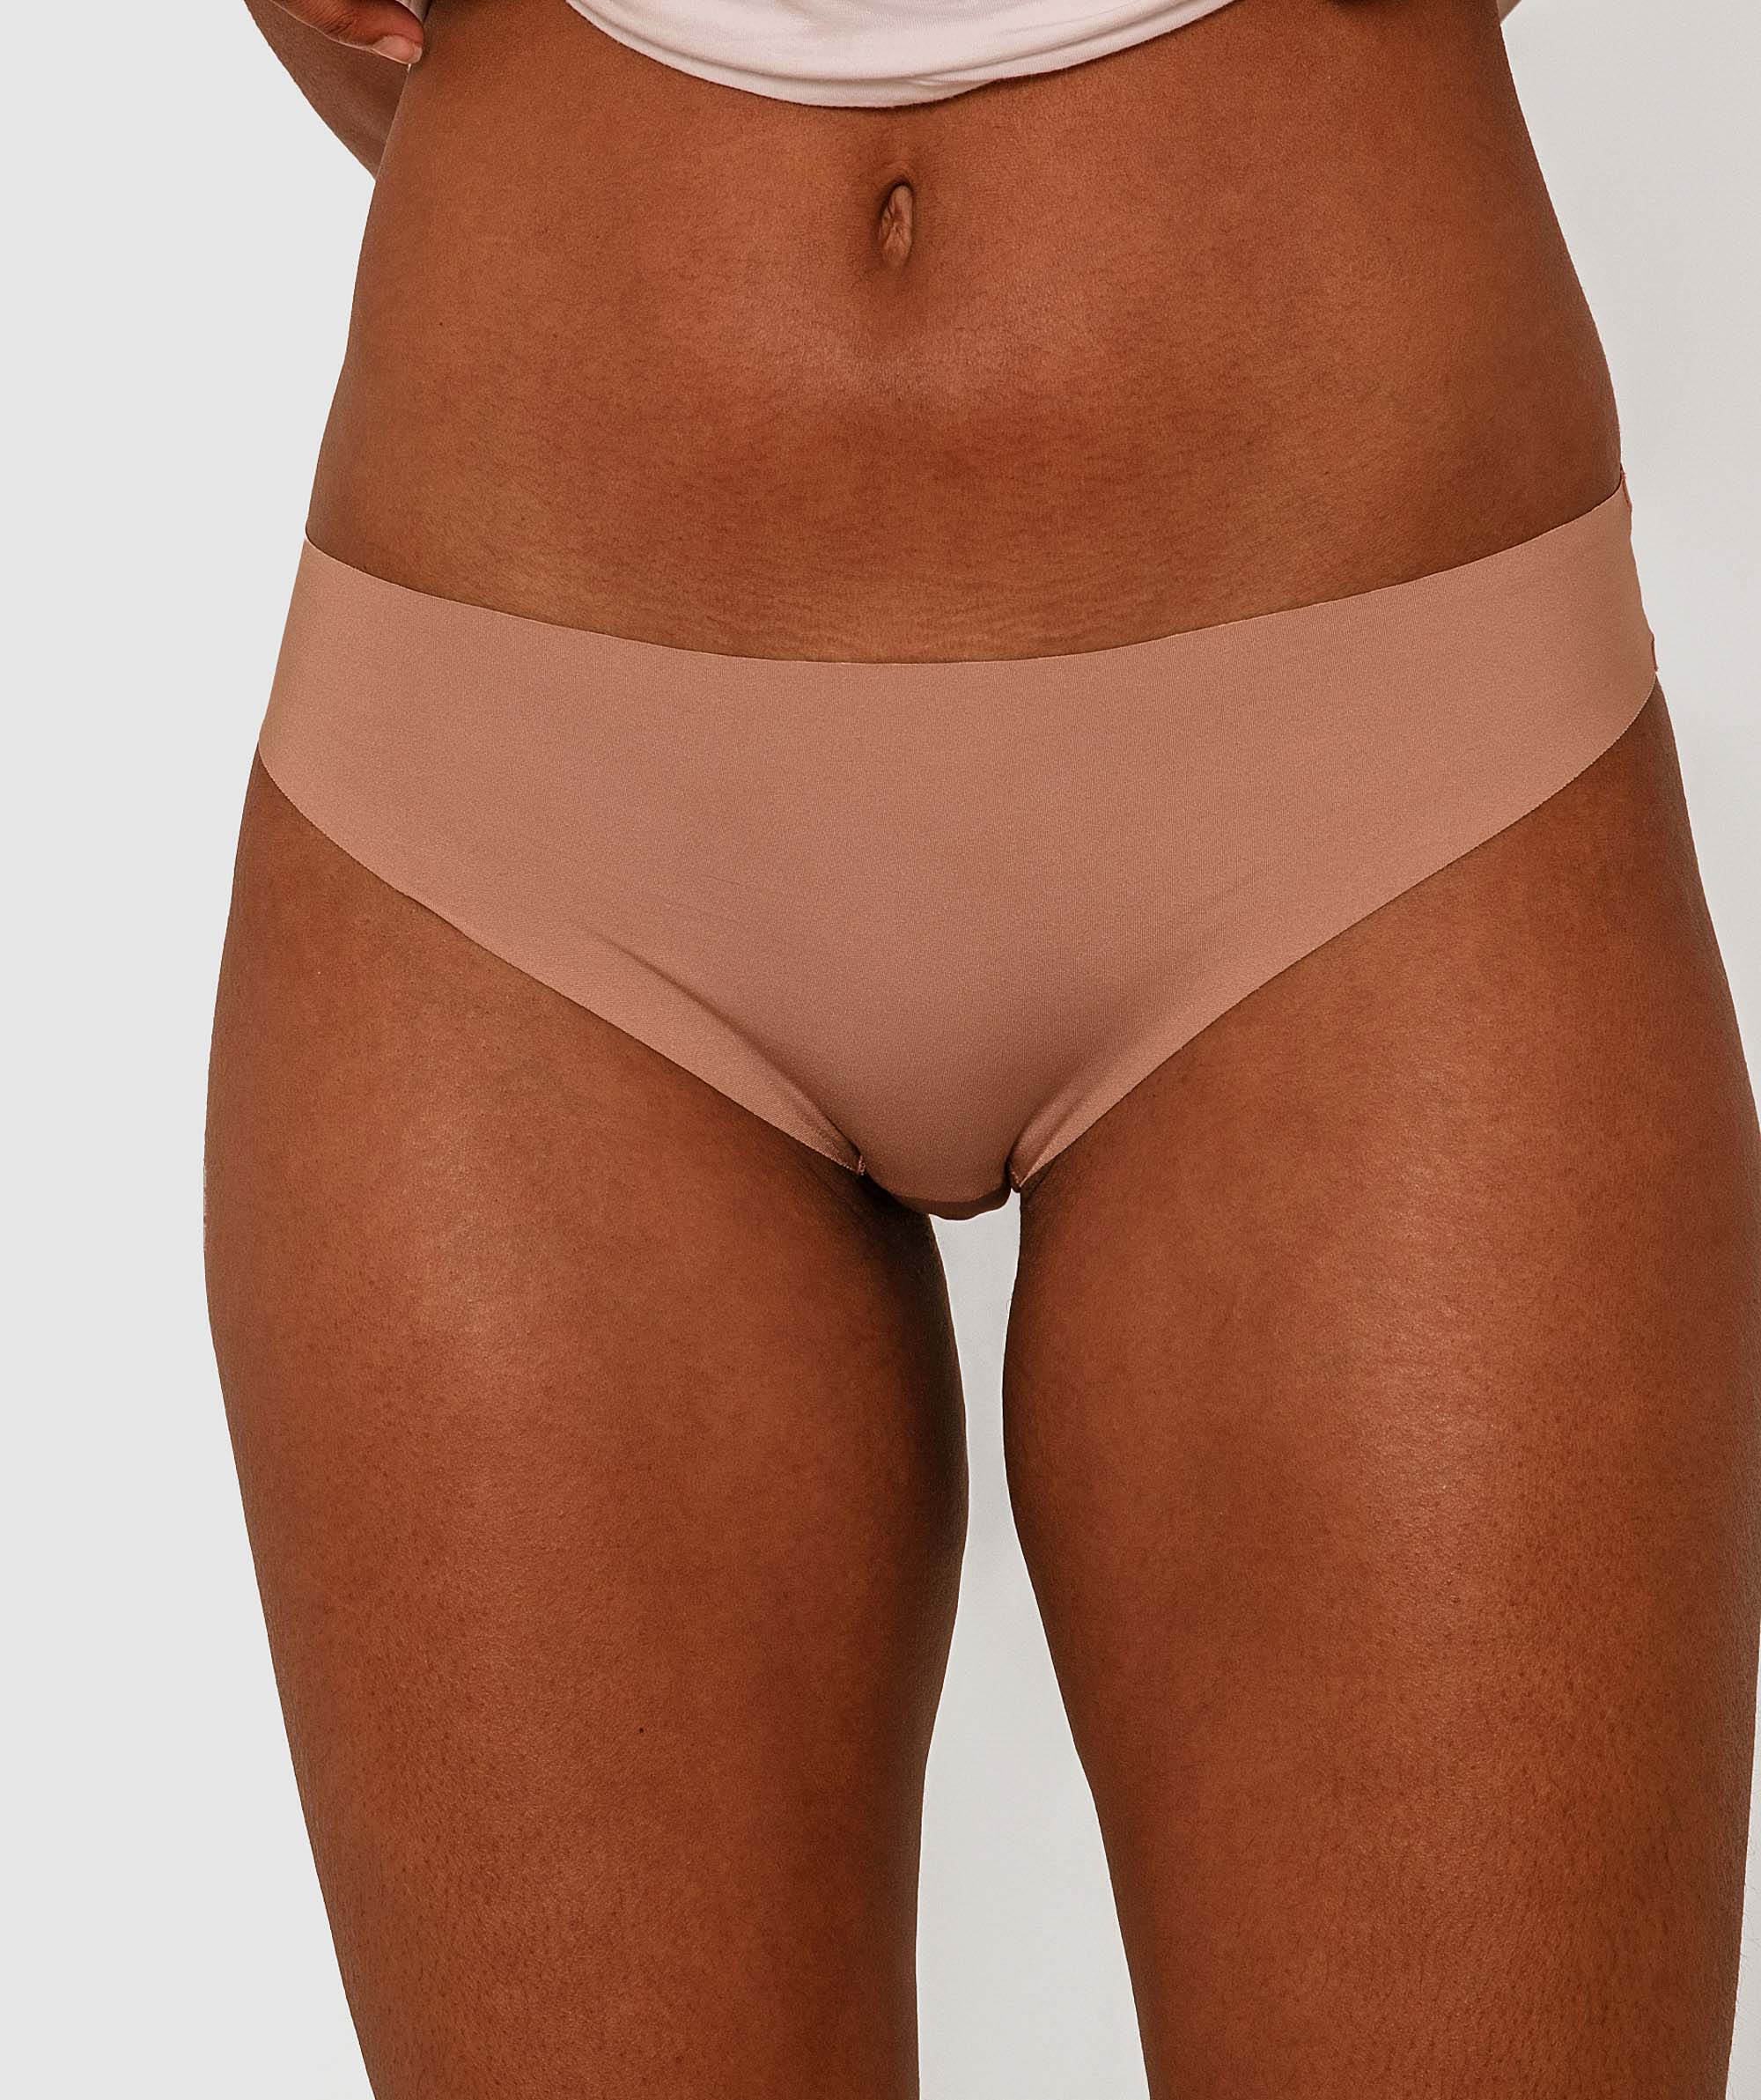 Smooth Comfort Bikini Knicker - Nude 4